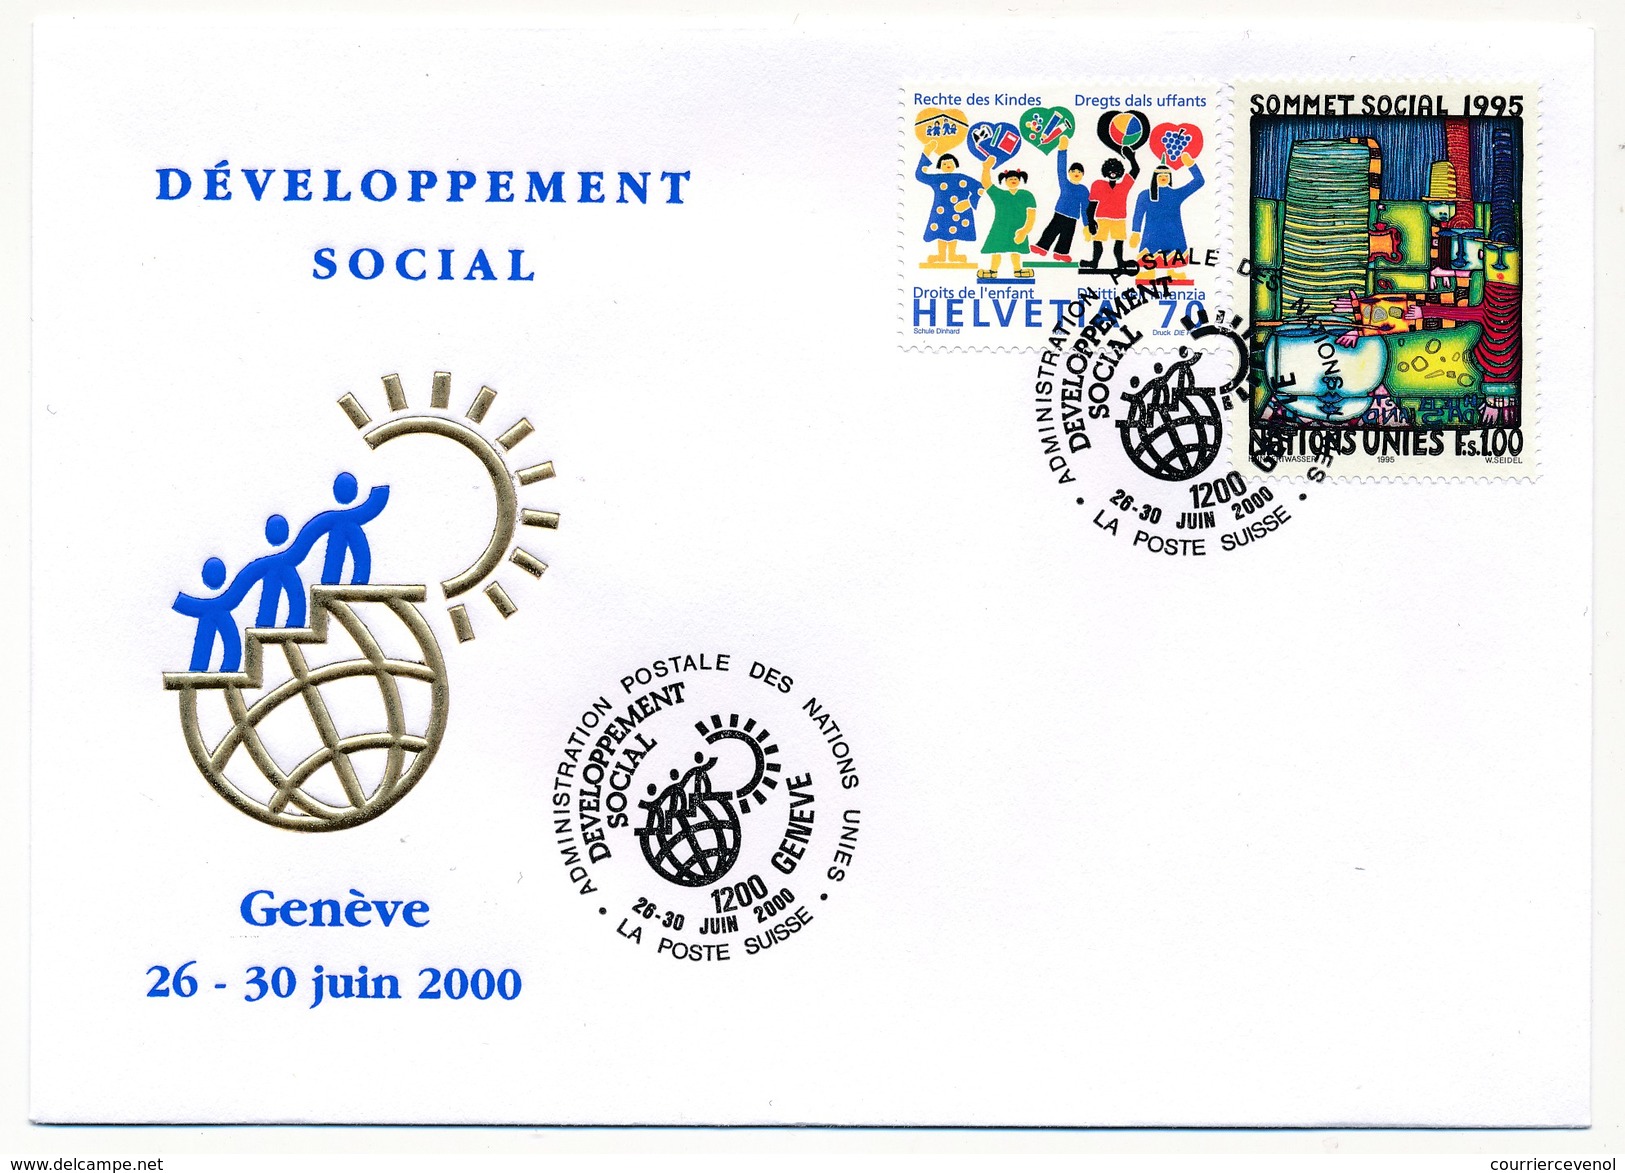 SUISSE / NATIONS UNIES - 1 Enveloppe FDC - Développement Social (Droits Enfants - Sommet Social) - GENEVE Juin 2000 - FDC